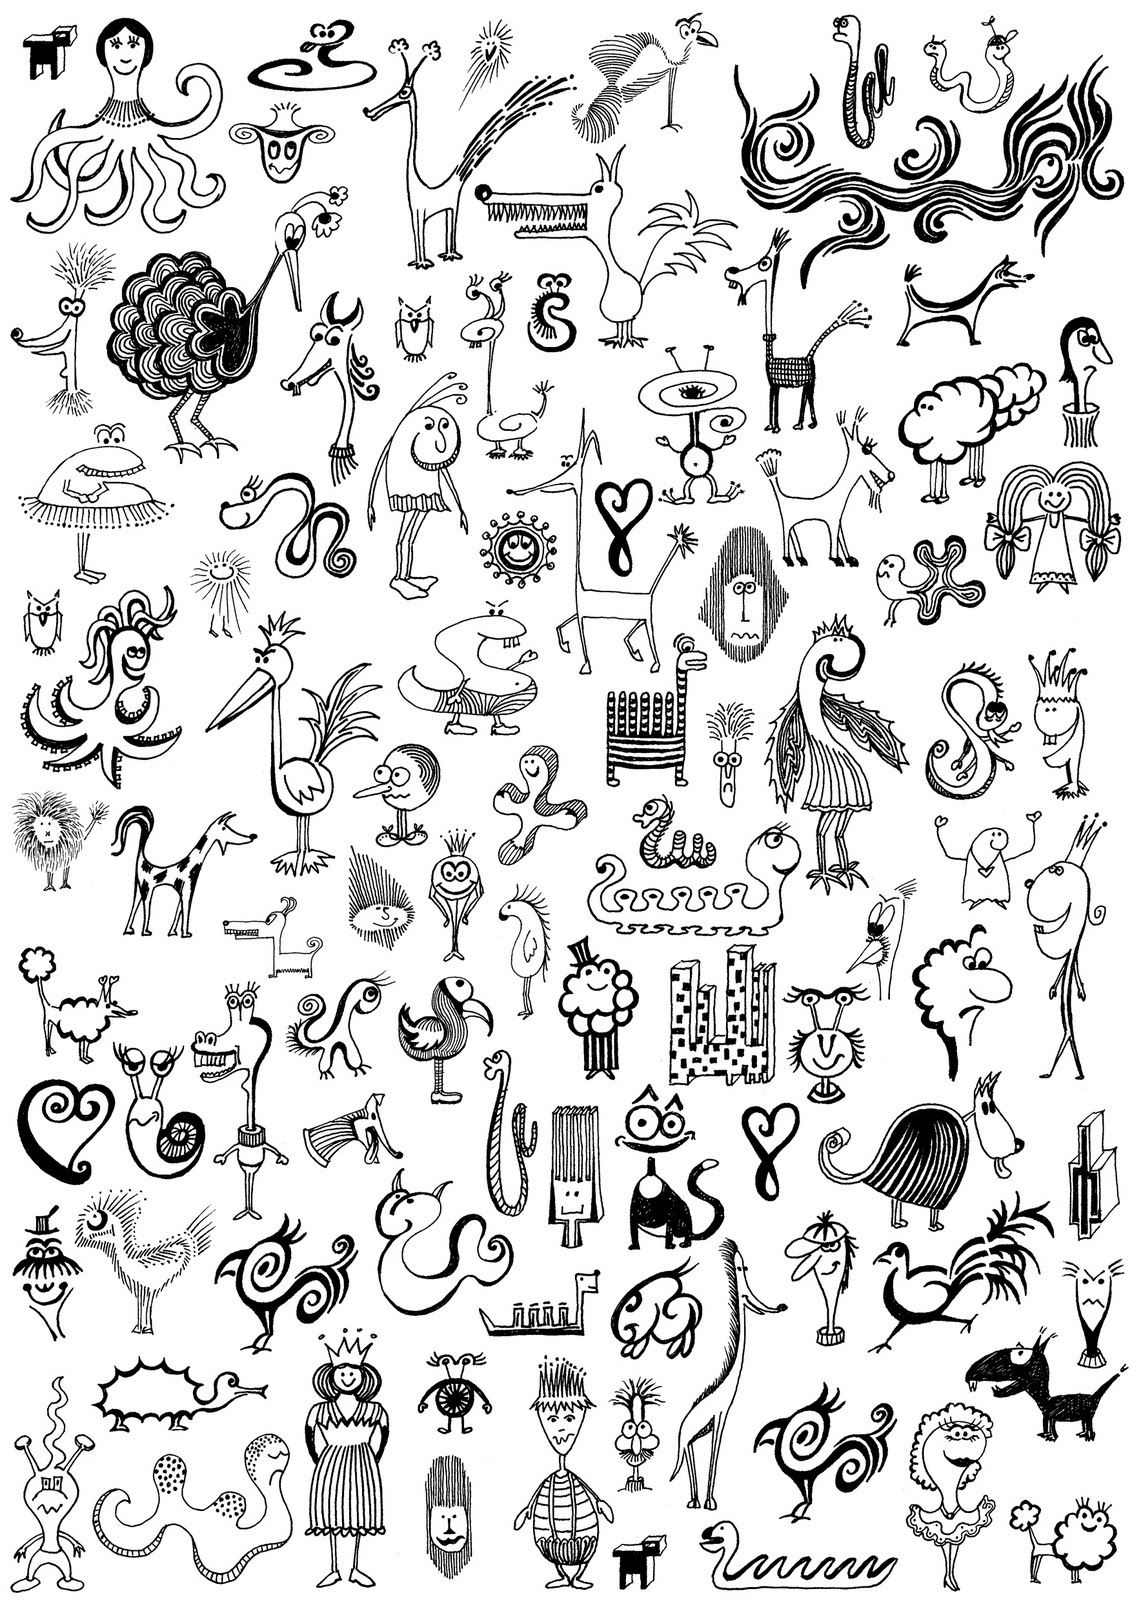 fun pattern doodles